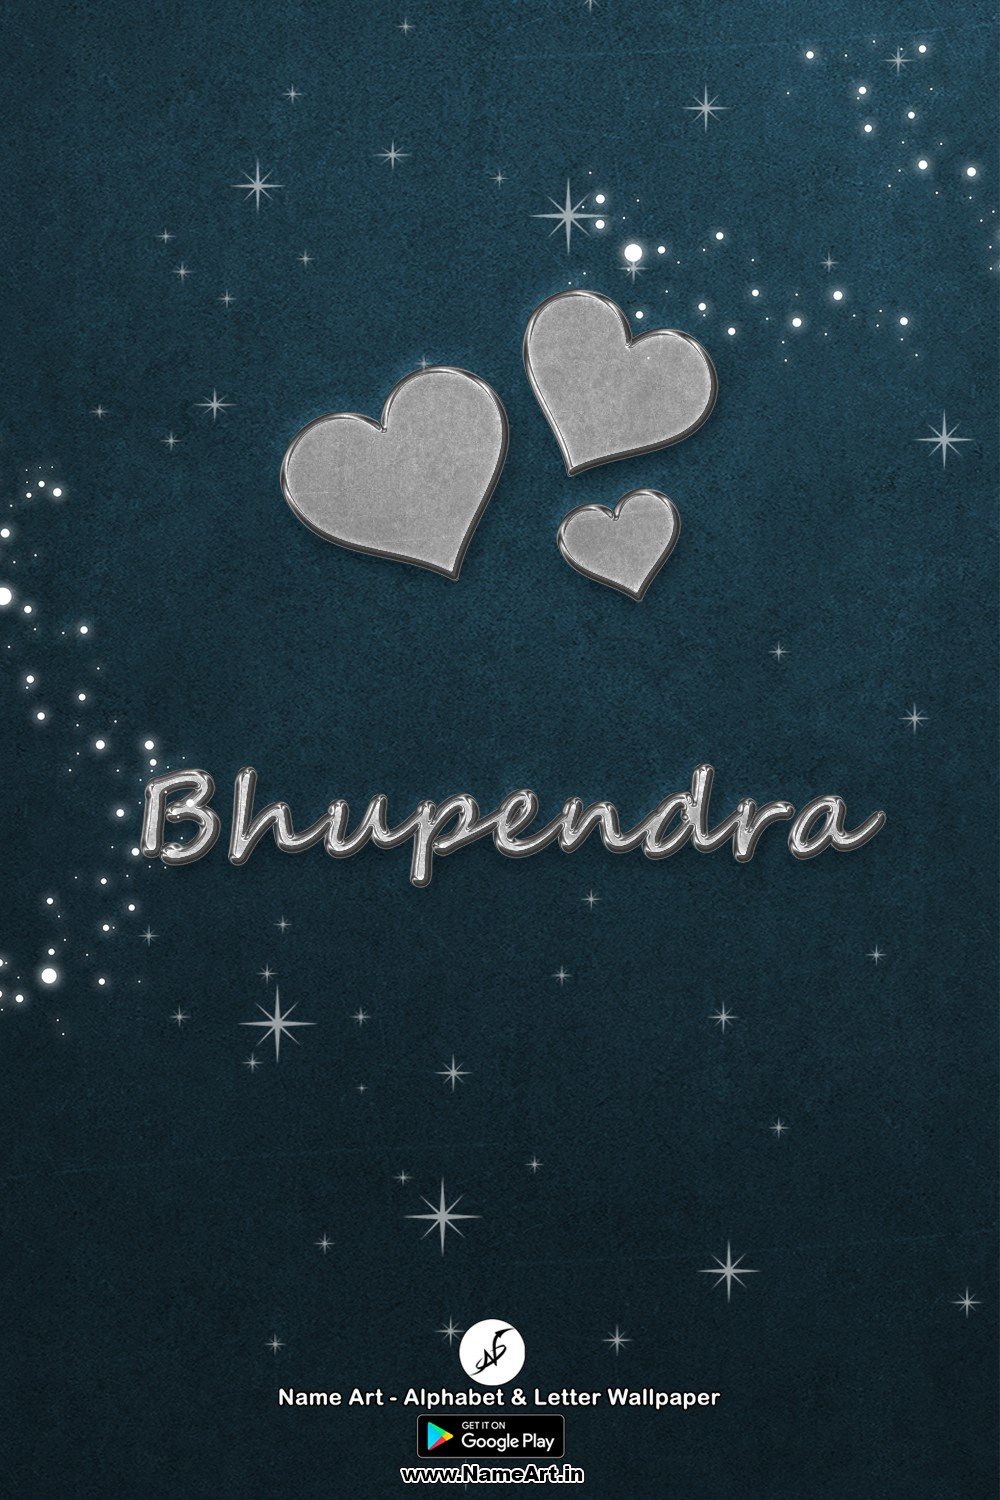 Bhupendra | Whatsapp Status Bhupendra | Happy Birthday To You !! | Bhupendra New Whatsapp Status images |